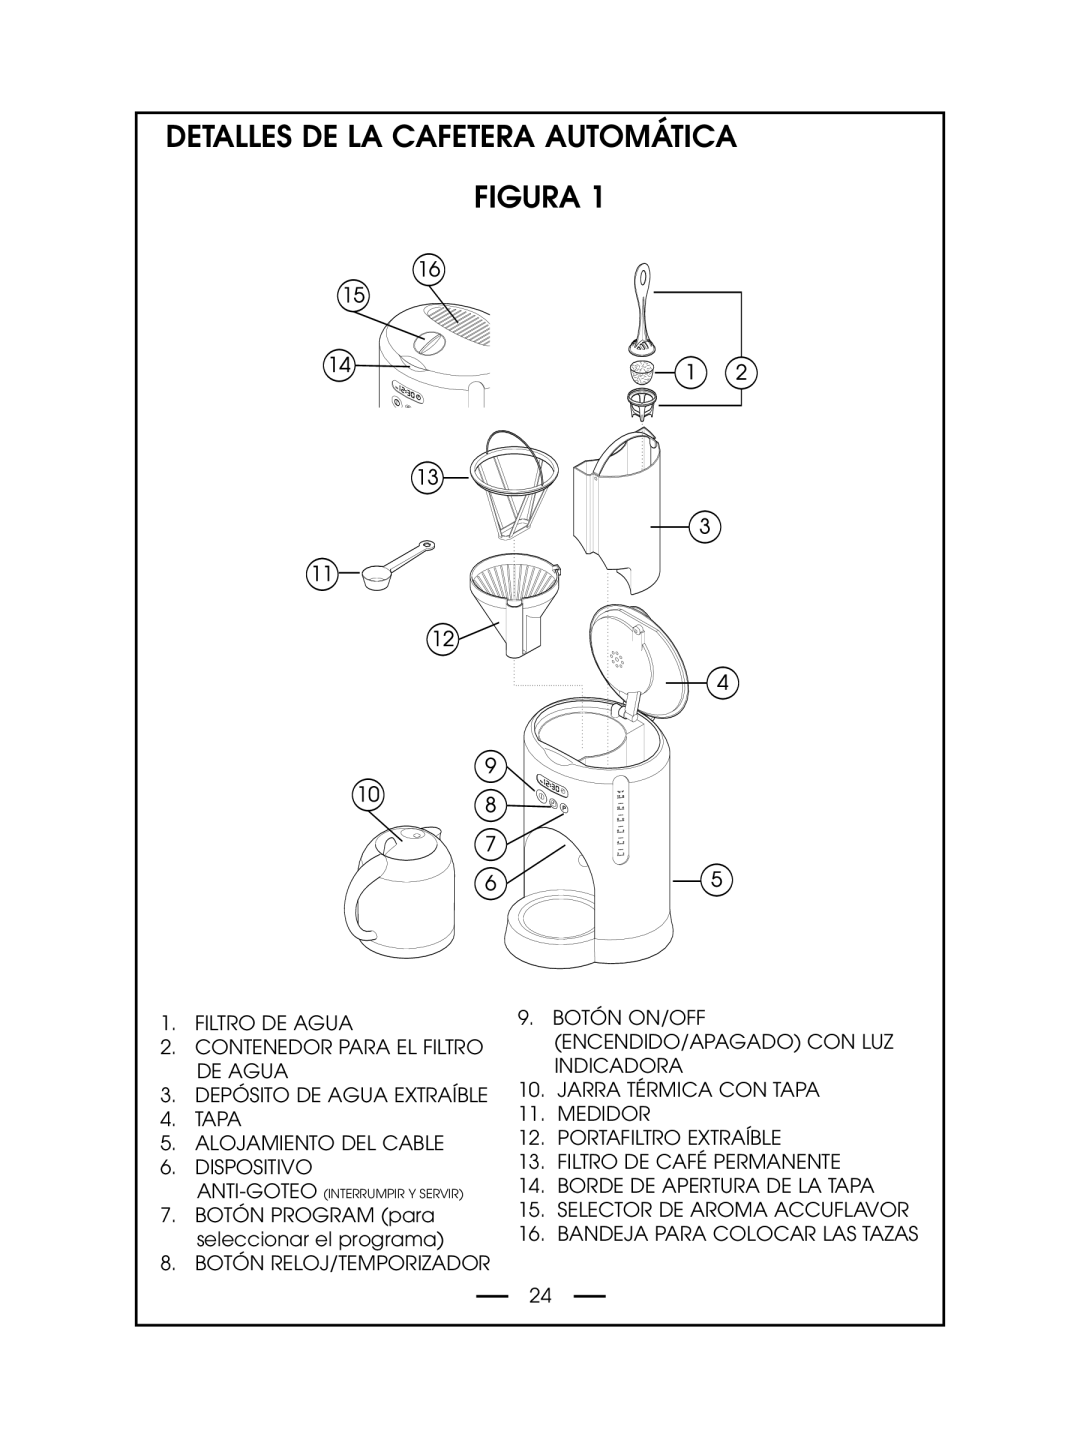 DeLonghi DCM485 instruction manual Detalles De La Cafetera Automática Figura 